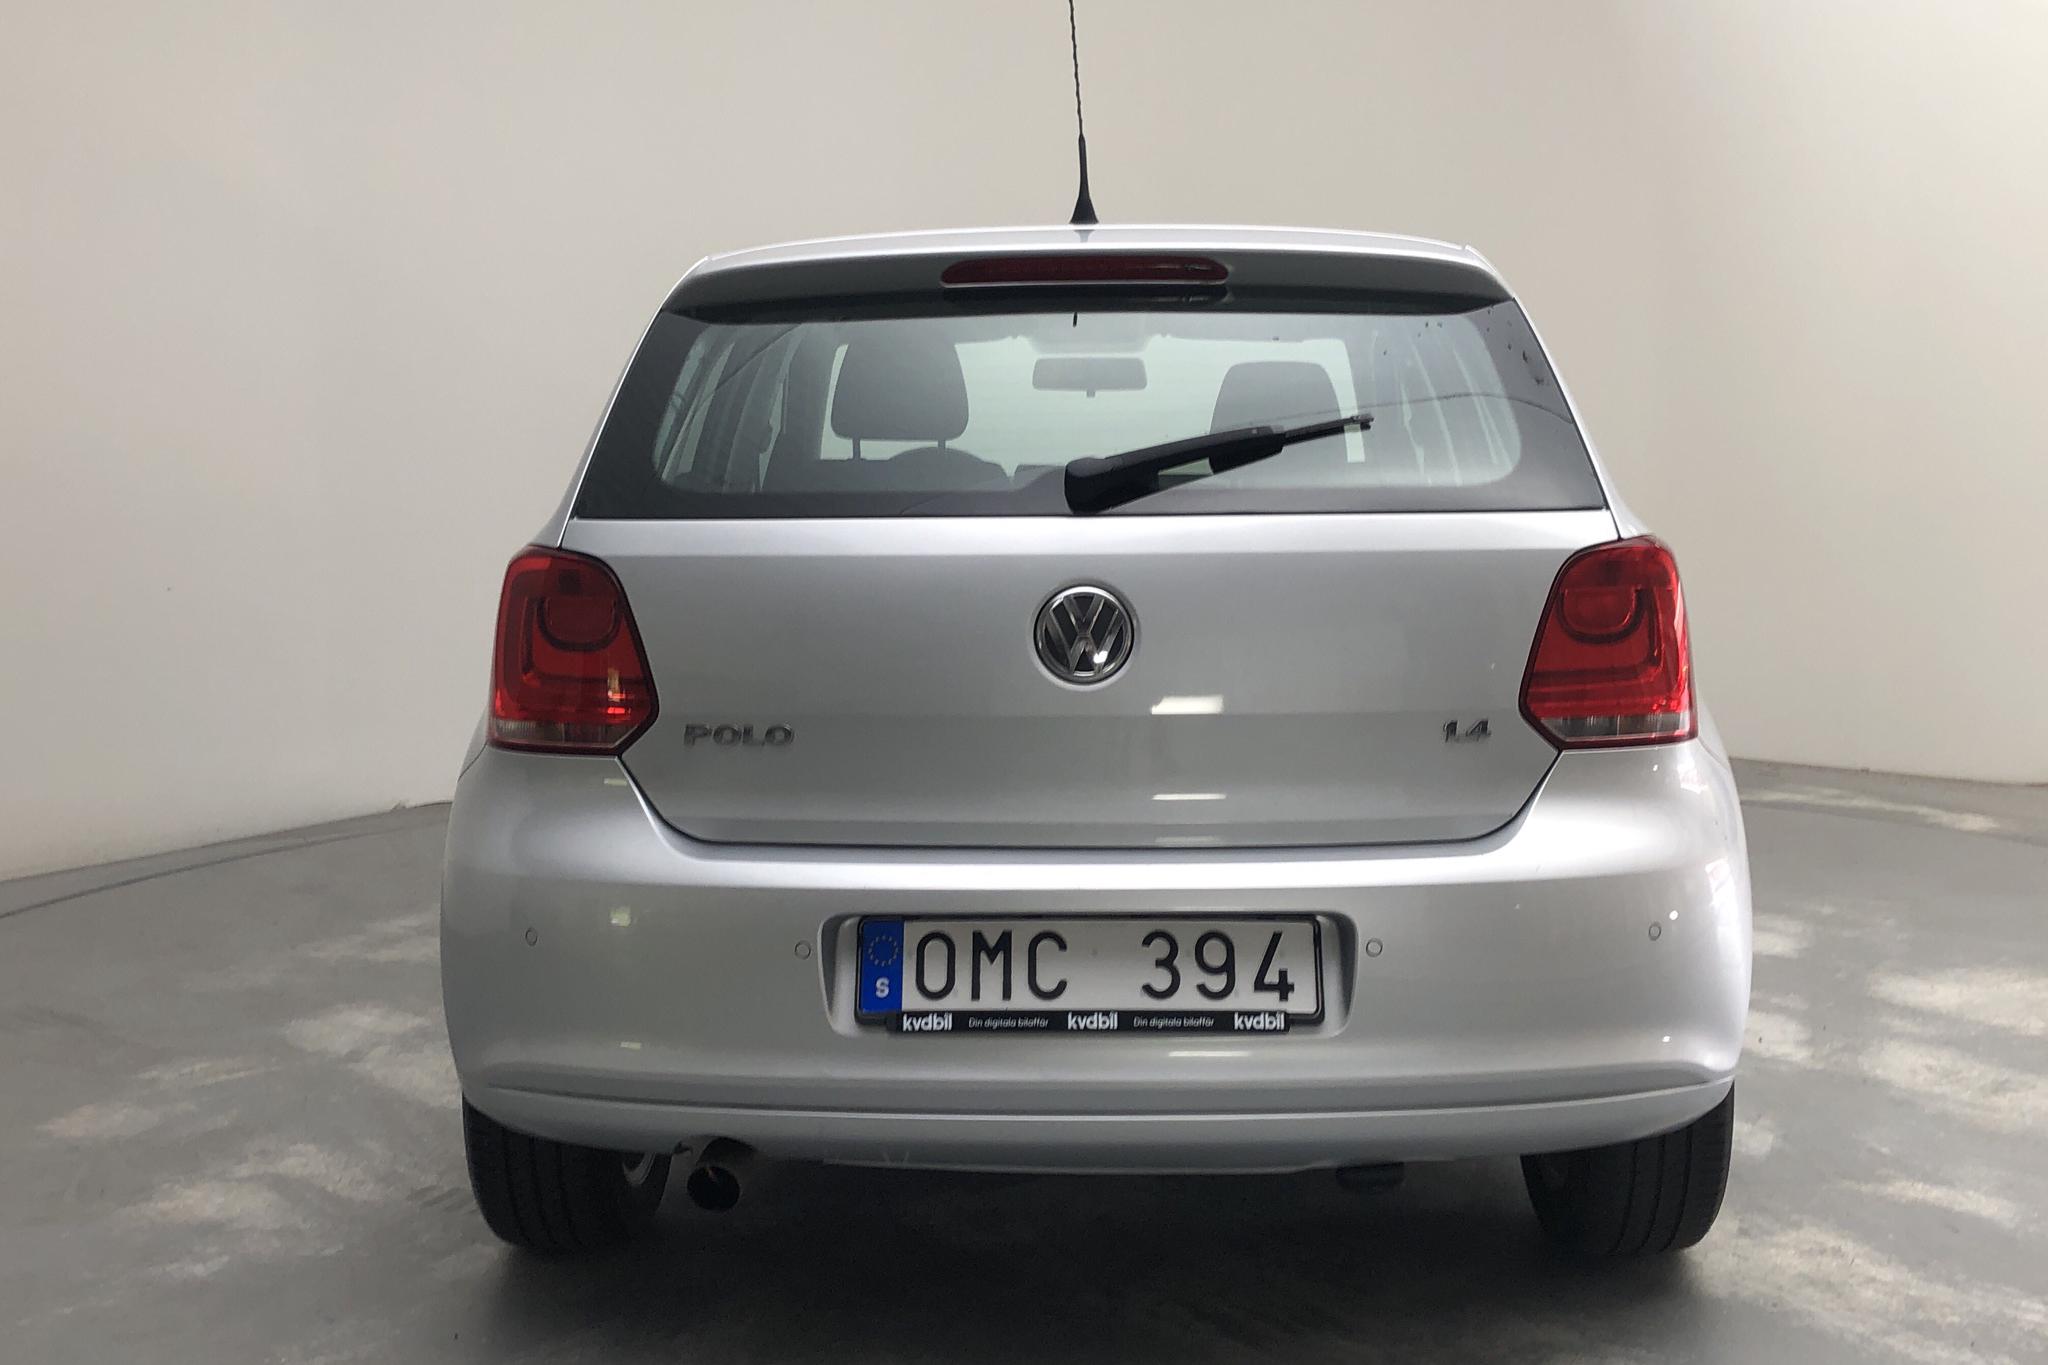 VW Polo 1.4 5dr (85hk) - 10 823 mil - Automat - silver - 2011